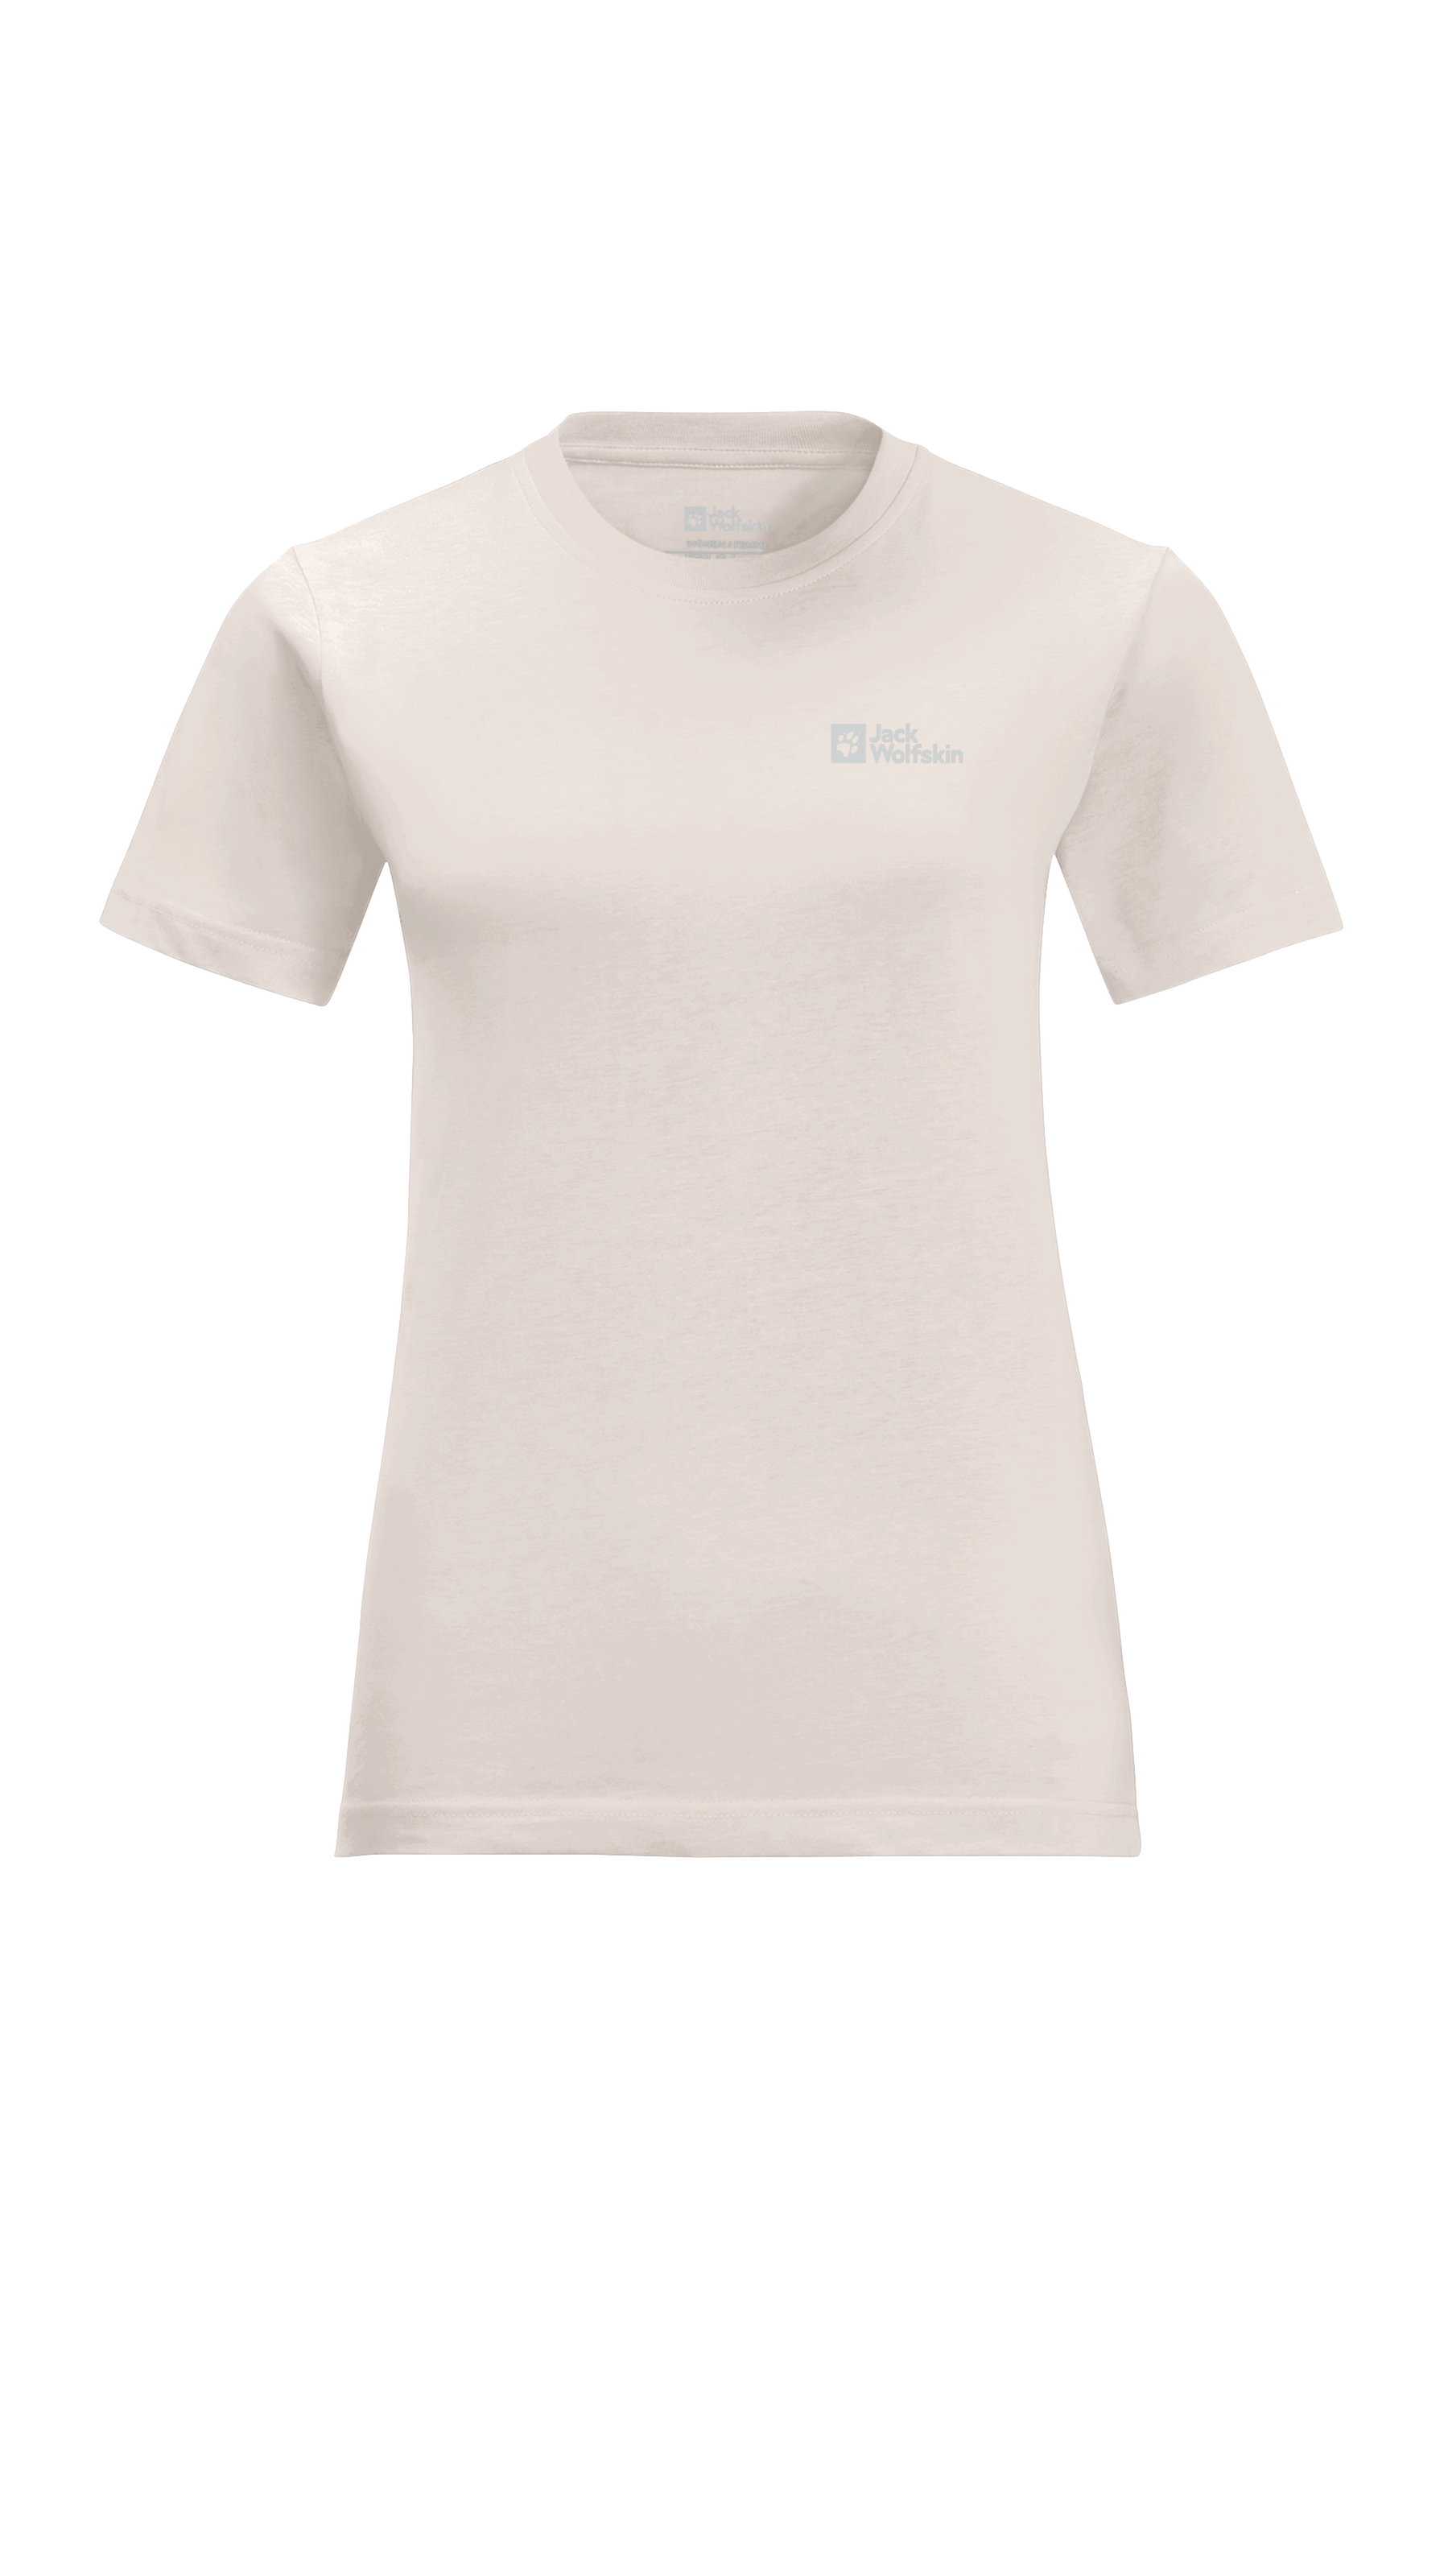 Jack Wolfskin T-Shirt »ESSENTIAL T W«, weiches, klassisches T-Shirt aus atmungsaktiver Bio-Baumwolle